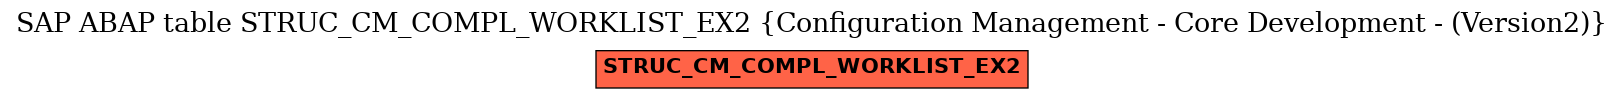 E-R Diagram for table STRUC_CM_COMPL_WORKLIST_EX2 (Configuration Management - Core Development - (Version2))